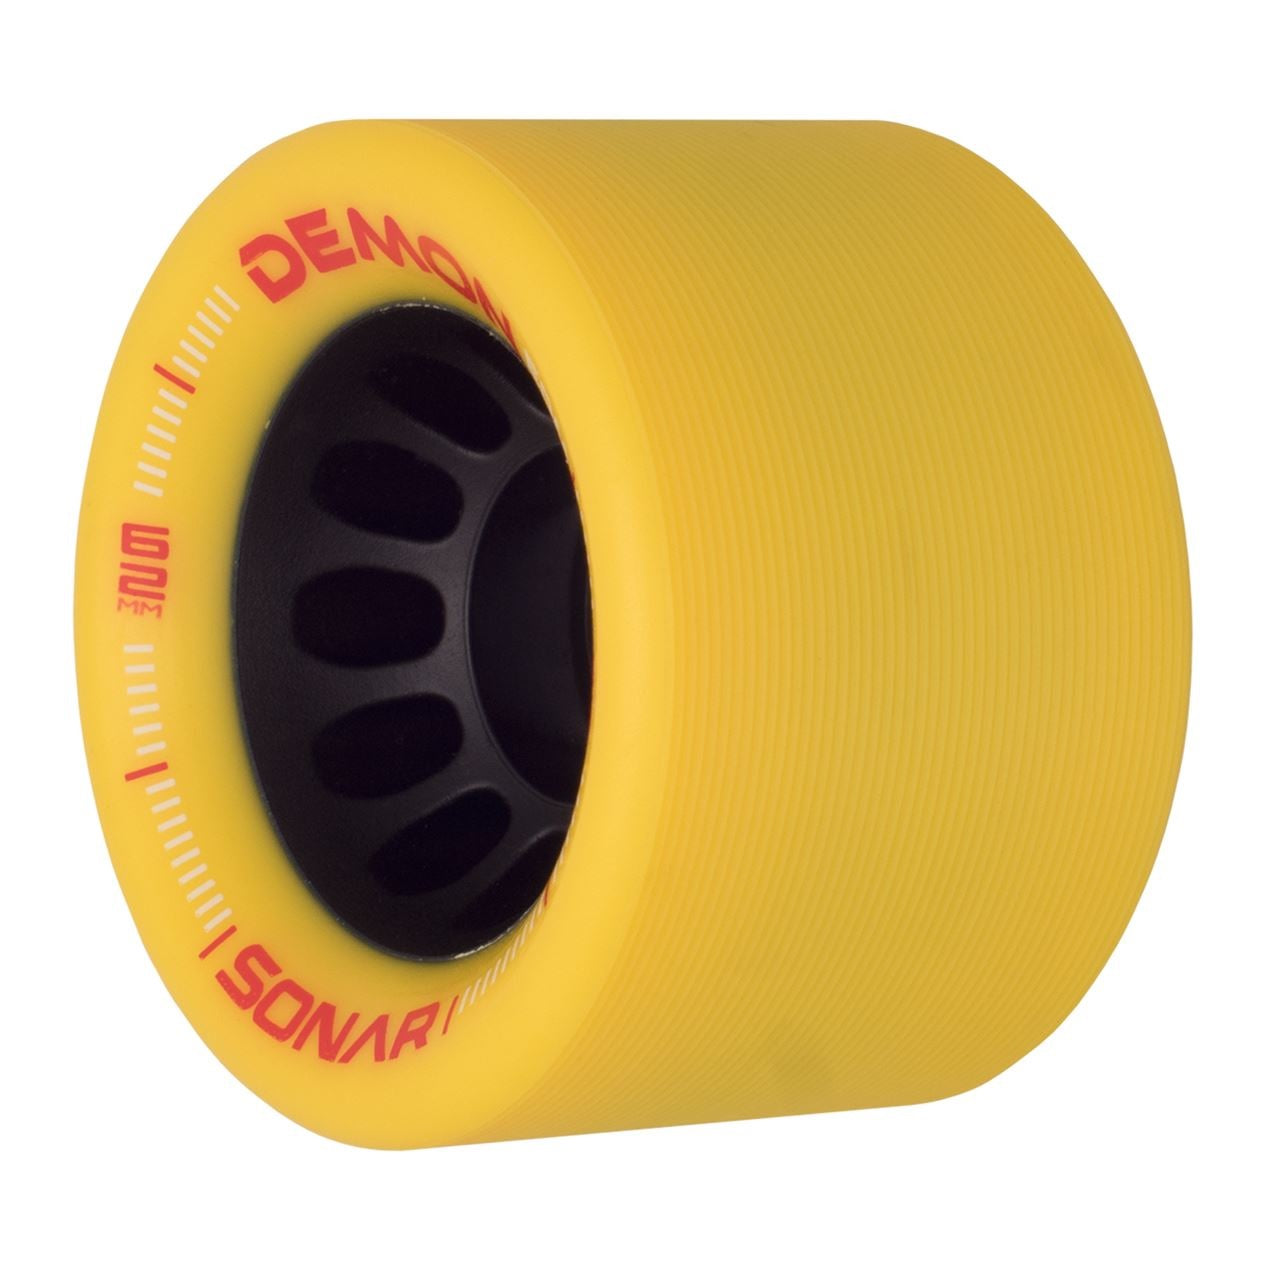 Sonar Demon EDM Roues de patins à roulettes jaunes 62 mm 95a - Lot de 4